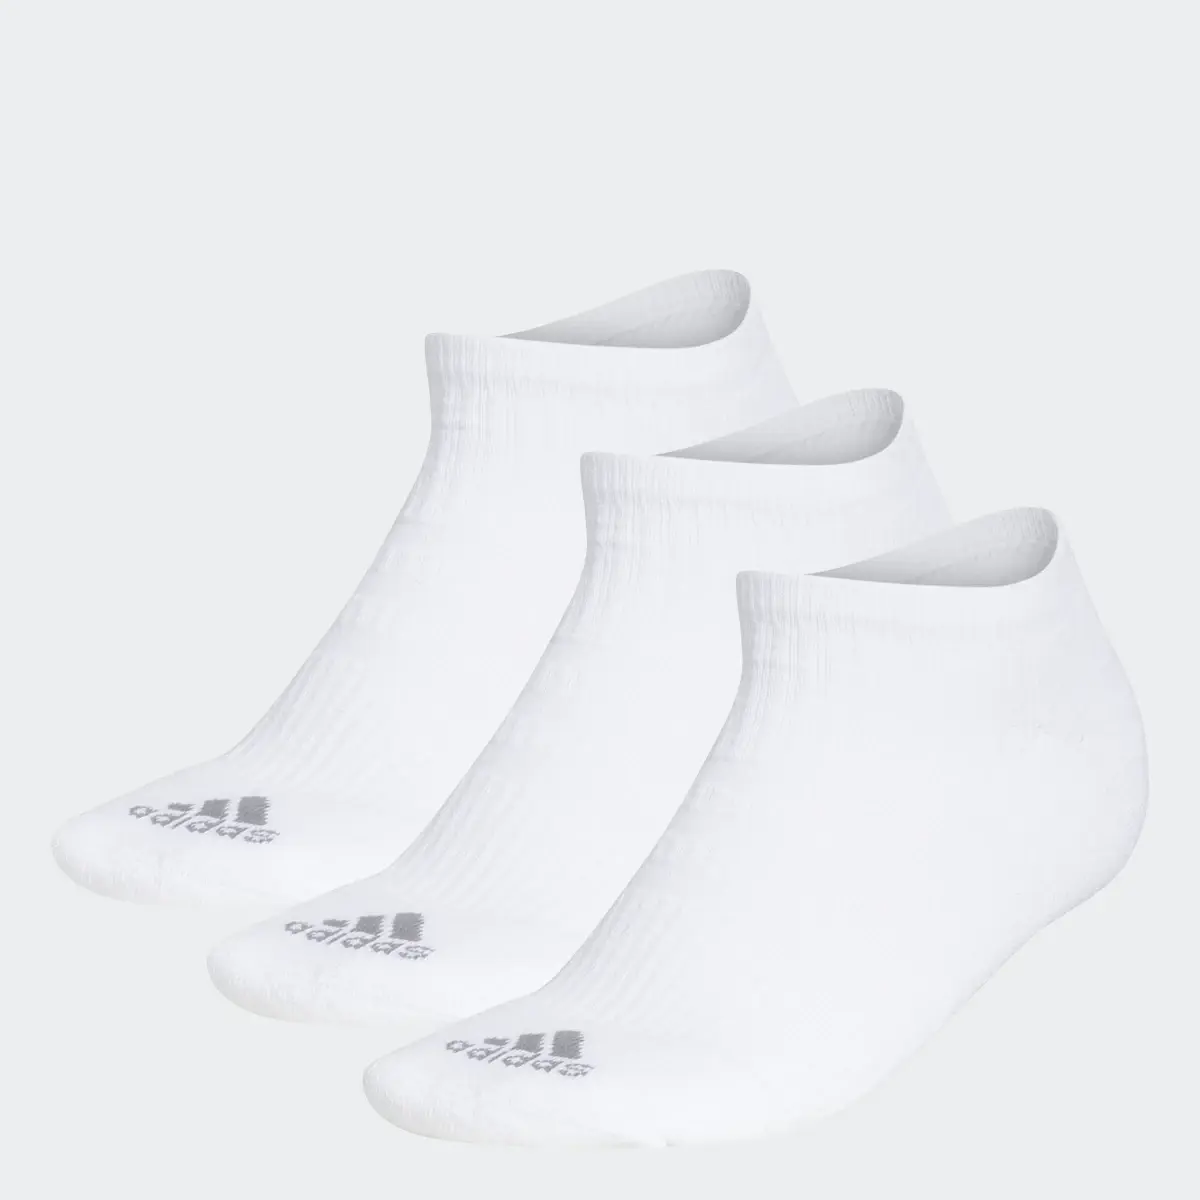 Adidas Meias de Cano Baixo Comfort — 3 pares. 1